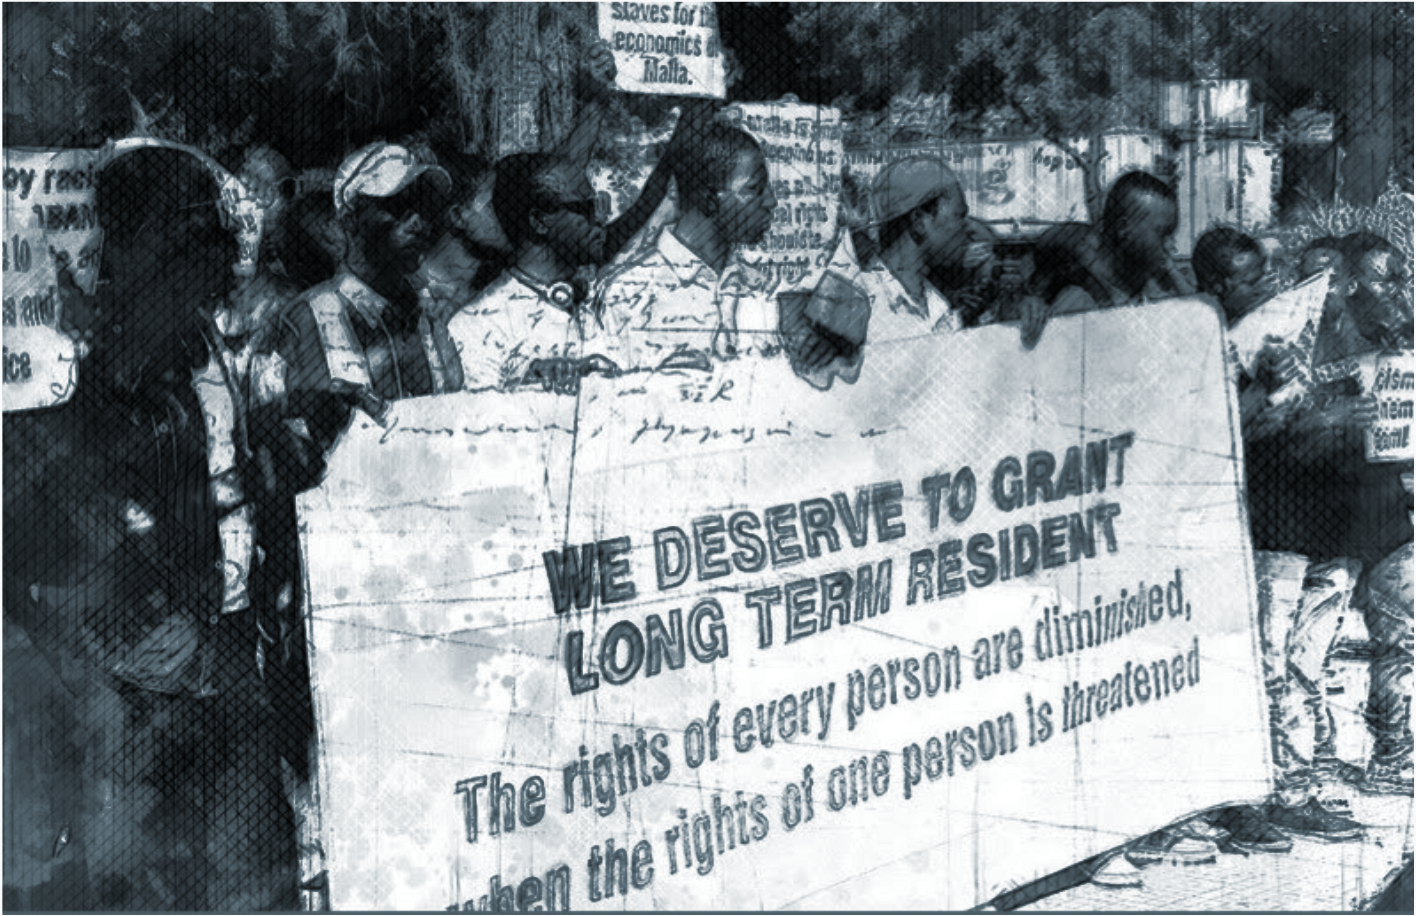 Menschen halten ein Plakat auf dem steht: "We deserve to grant long term resident"